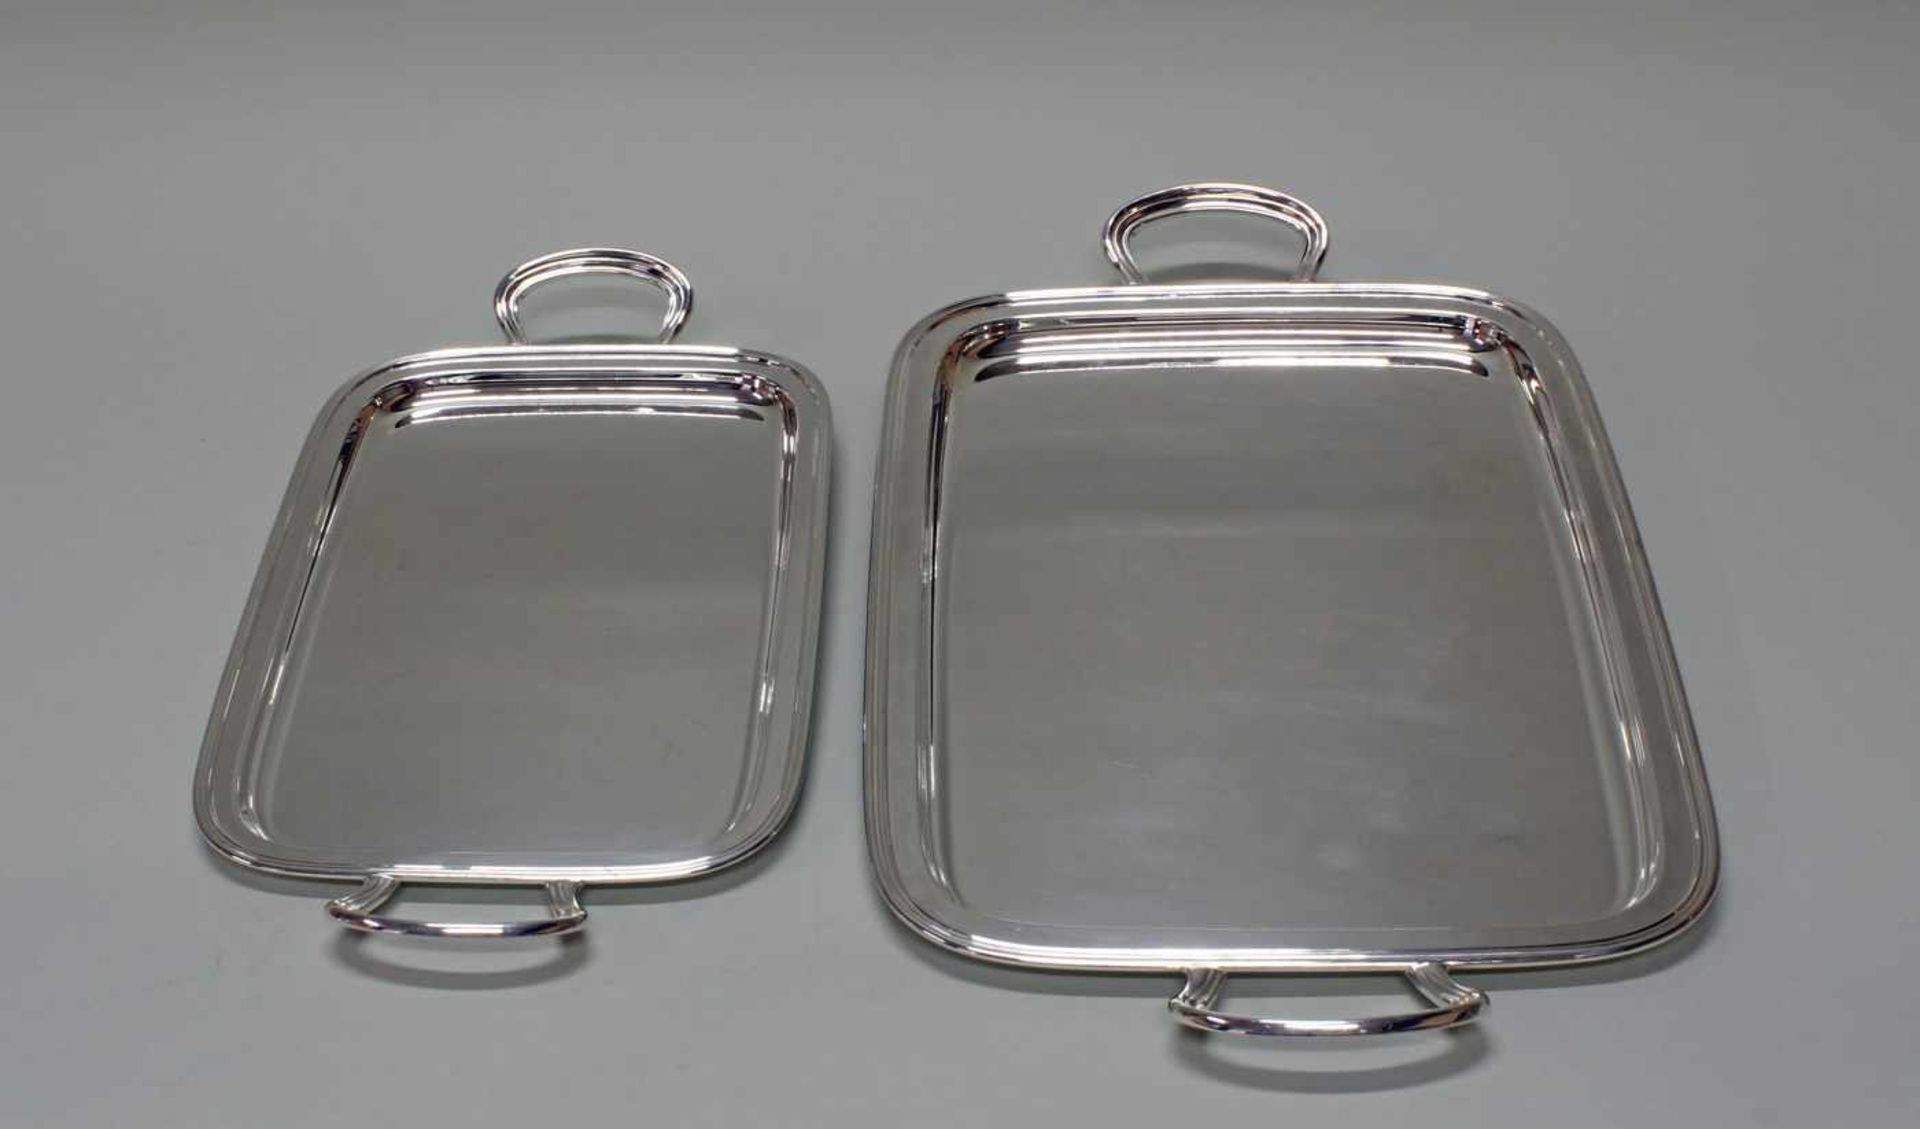 2 Tabletts, Silber 800, Italien, Profilrand, zwei Handhaben, glatter Spiegel, 43 x 22.5 cm, 53 x